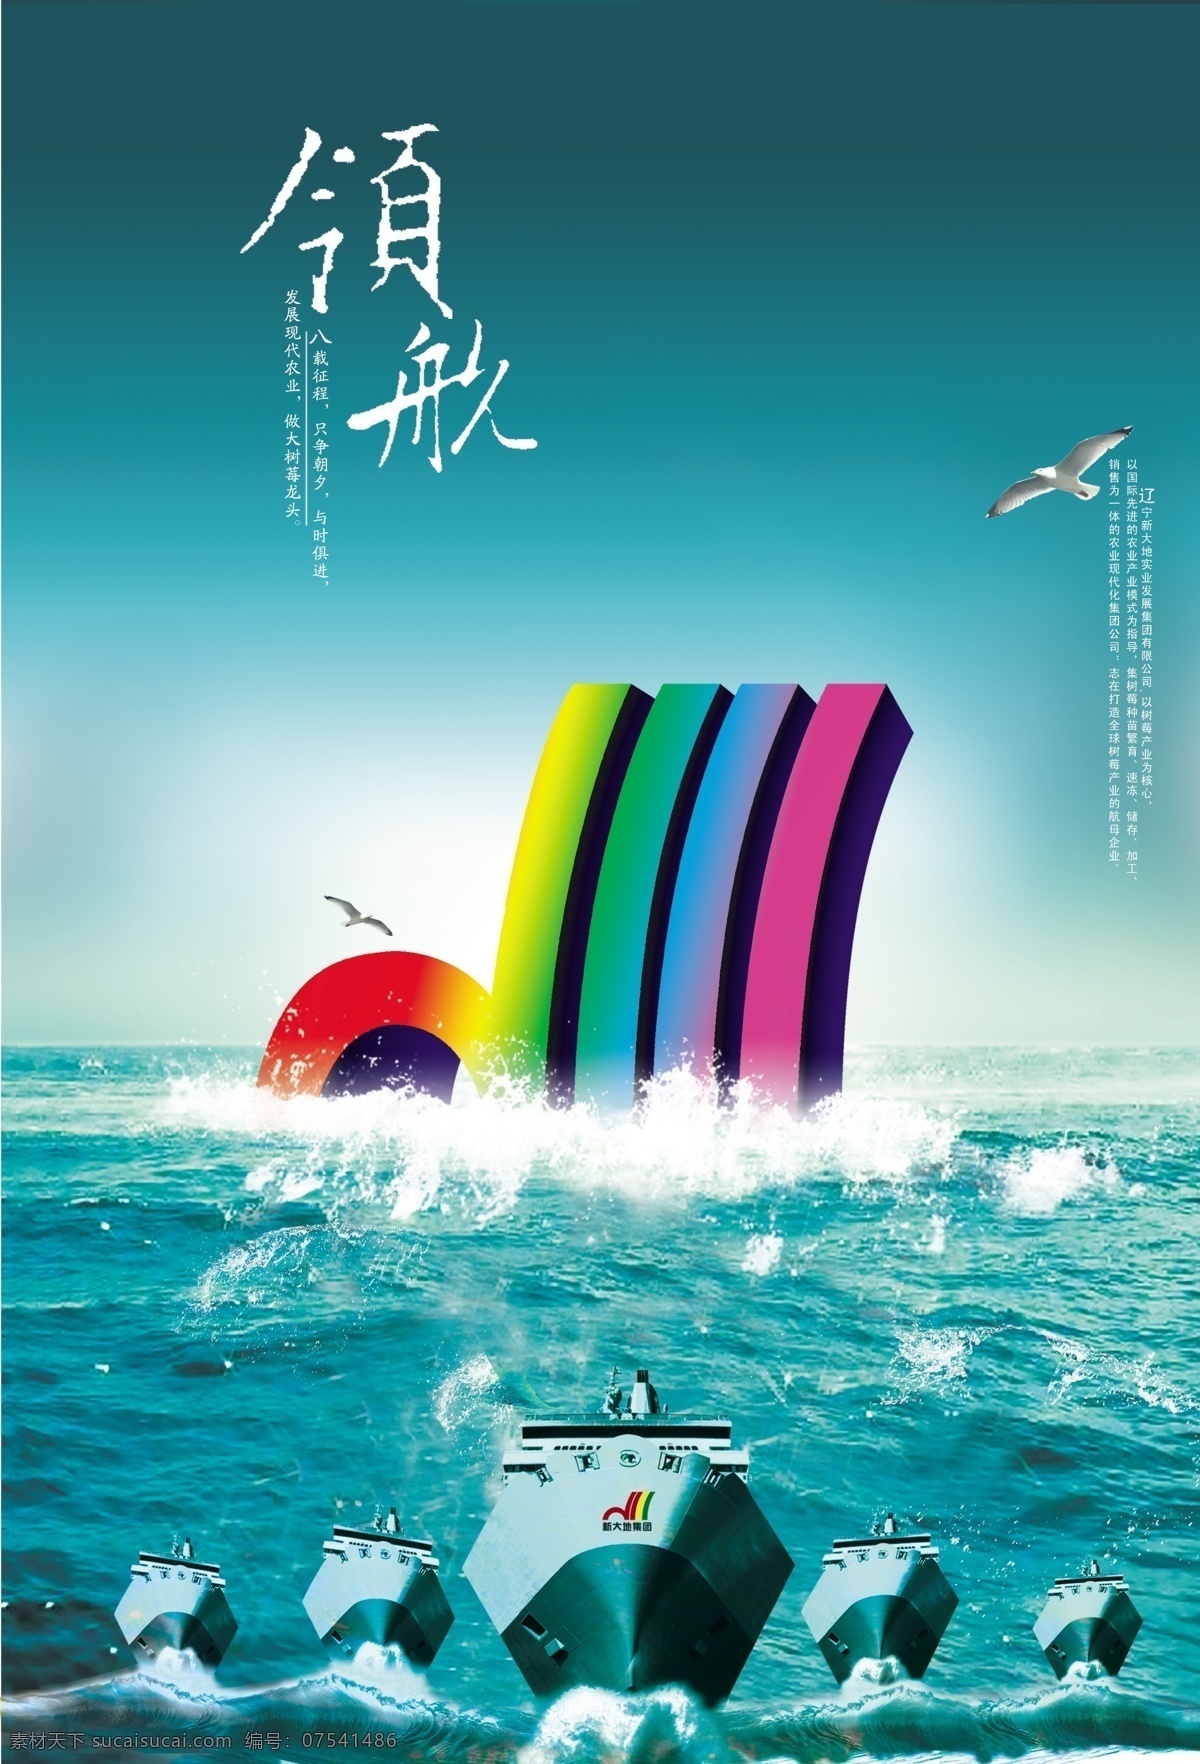 领航 海报 七彩虹 企业文化模板 企业文化素材 设计作品 航行的船 企业文化海报